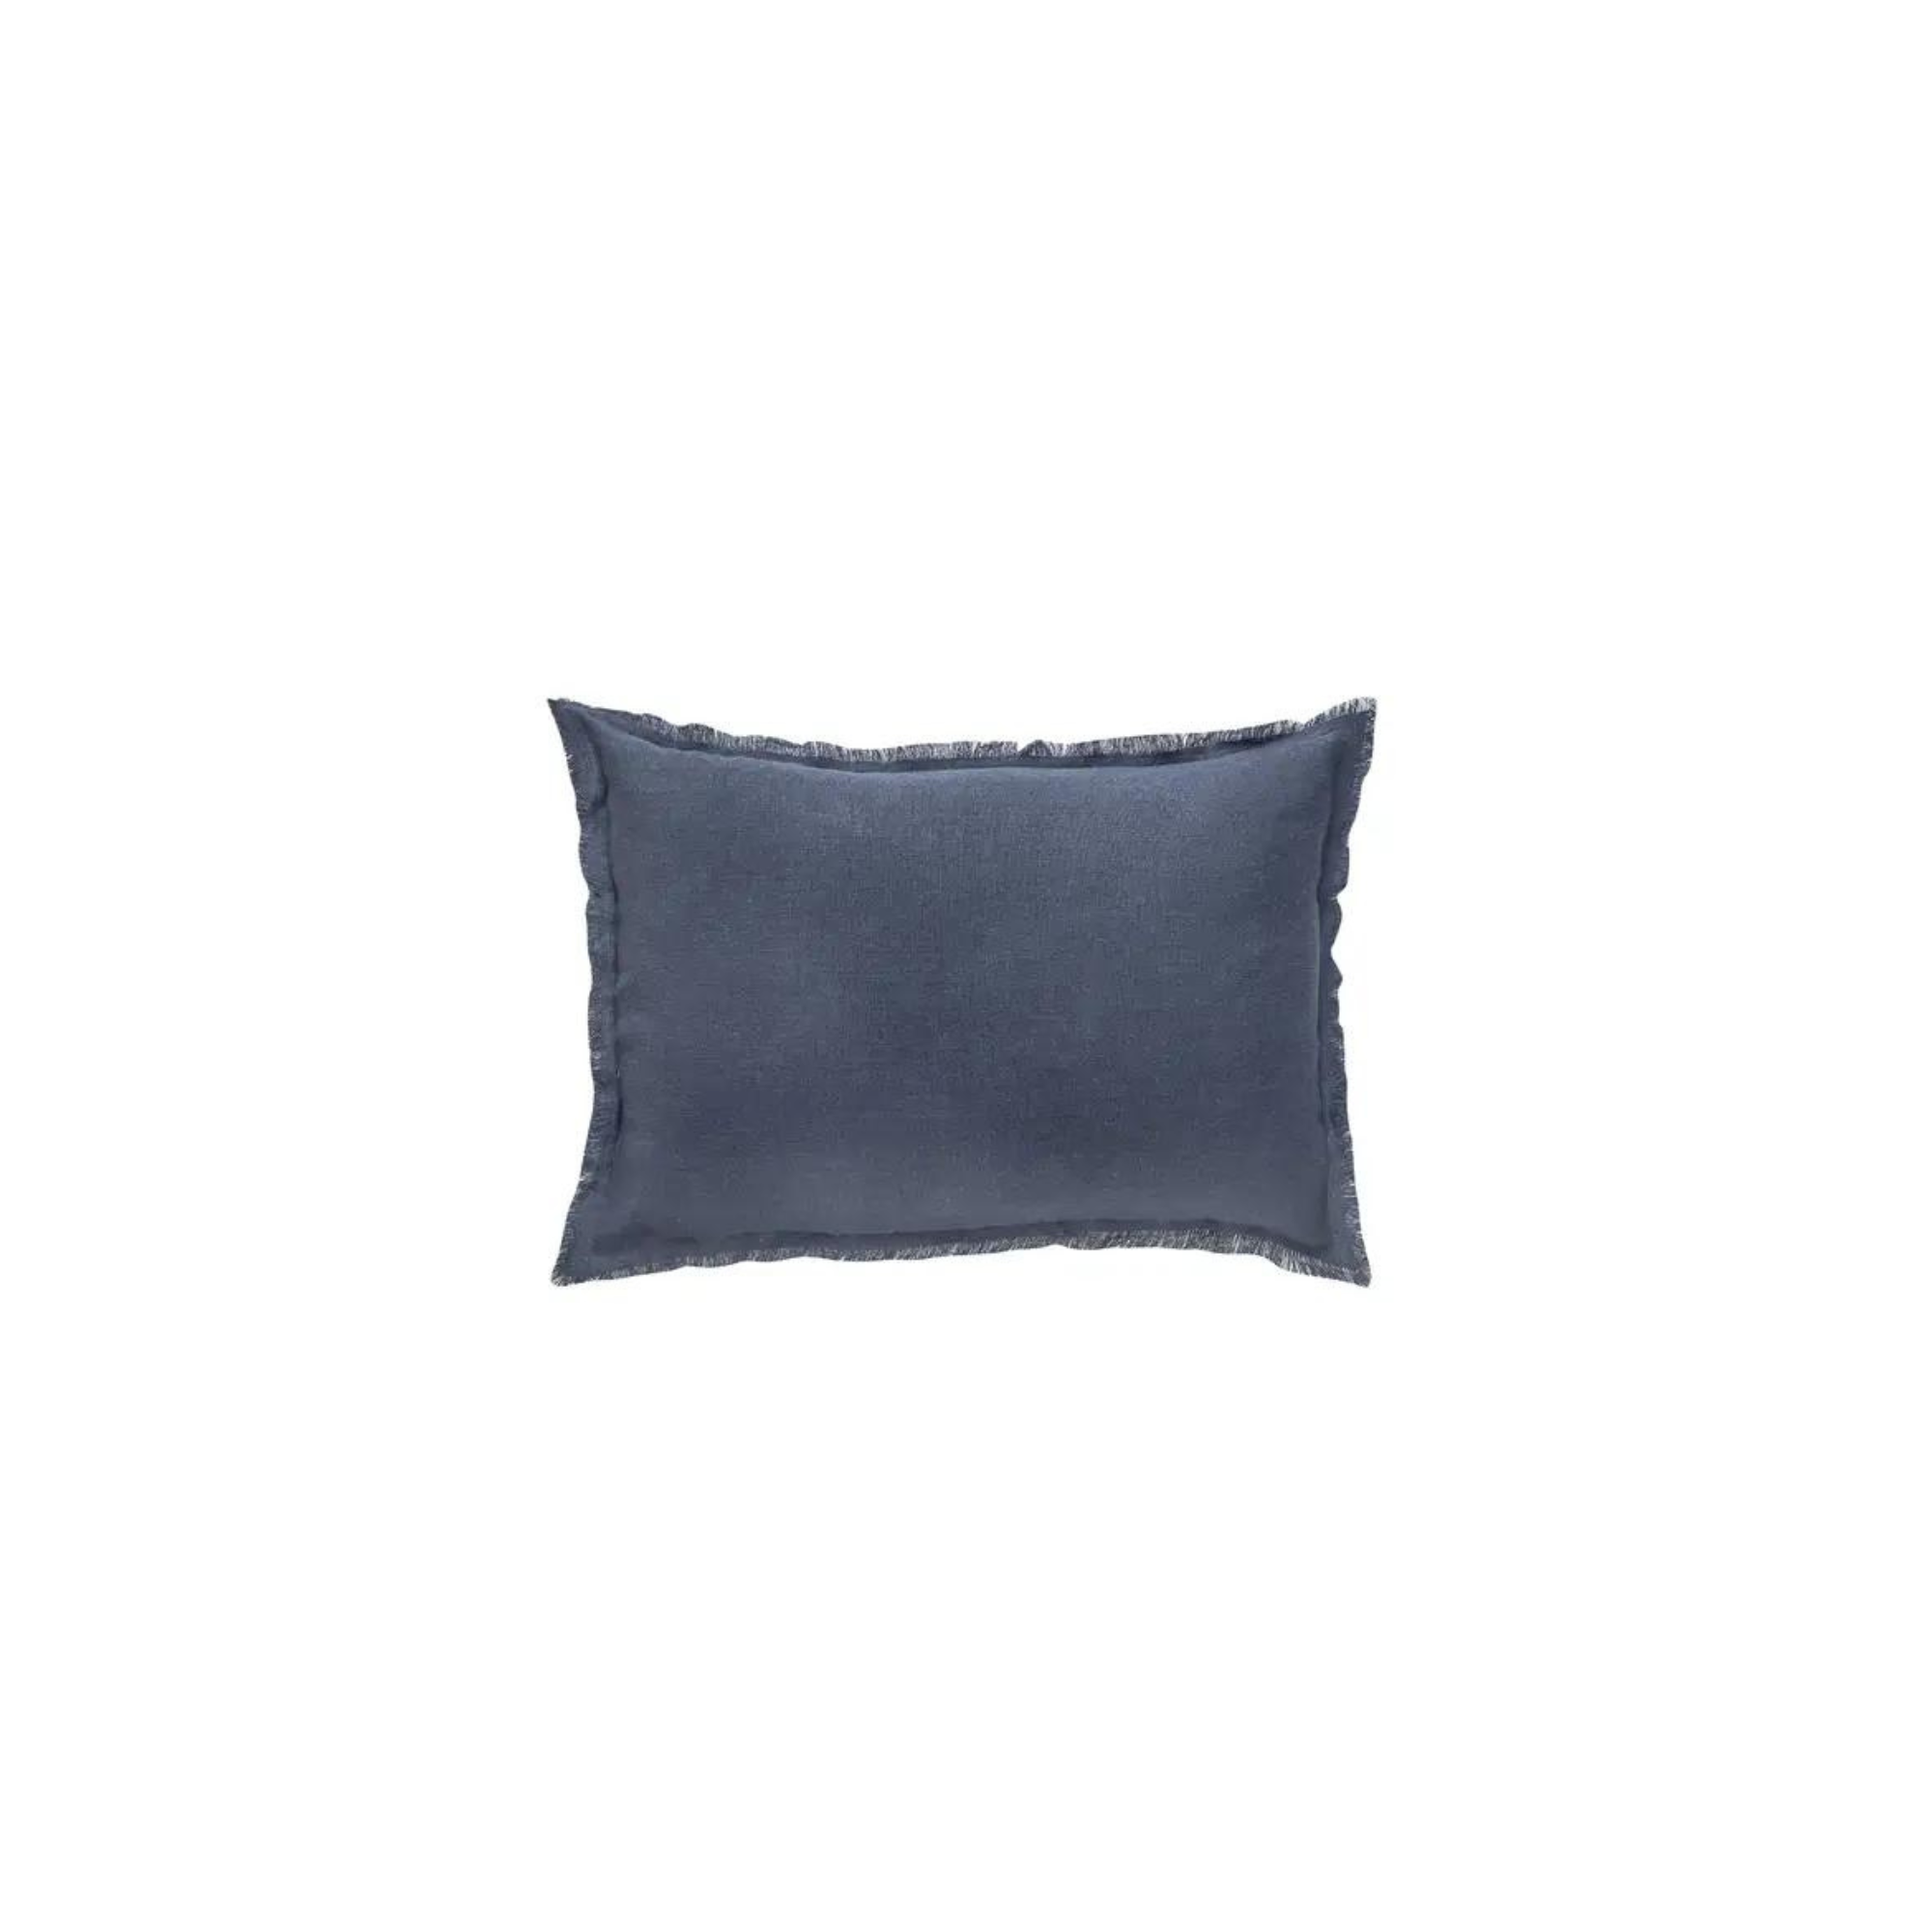 Navy Blue So Soft Linen Pillows